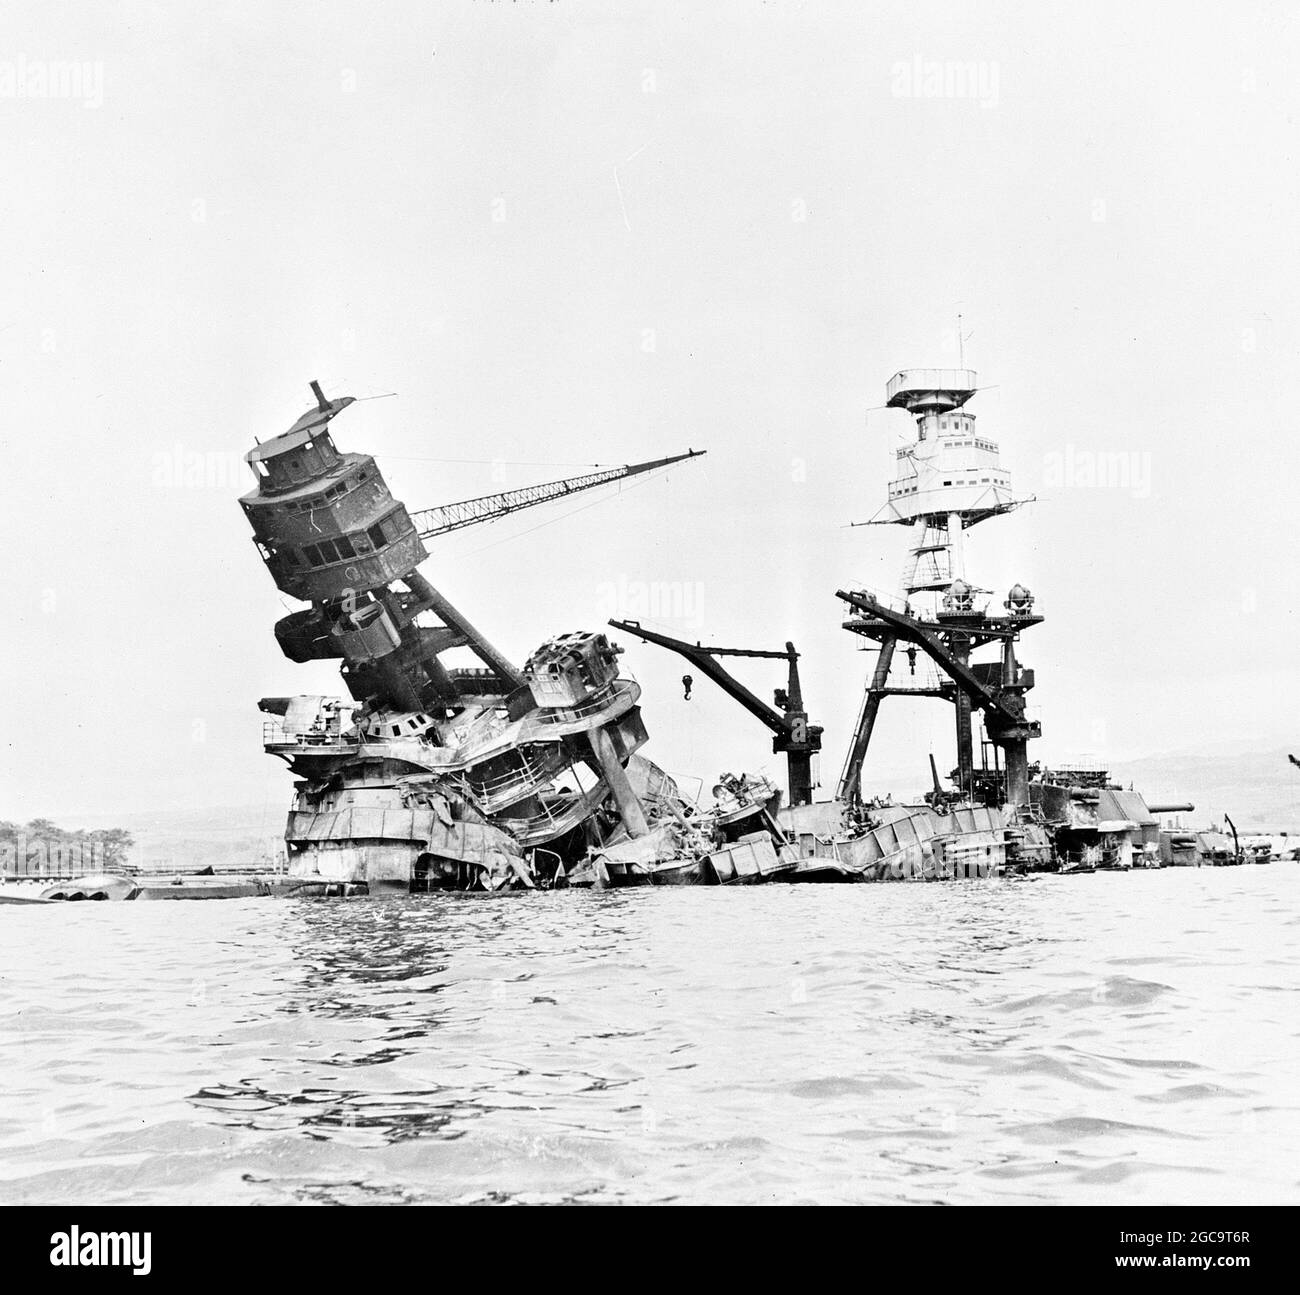 L'USS Arizona submergé après l'attaque japonaise sur Pearl Harbor, décembre 7 1941. Banque D'Images